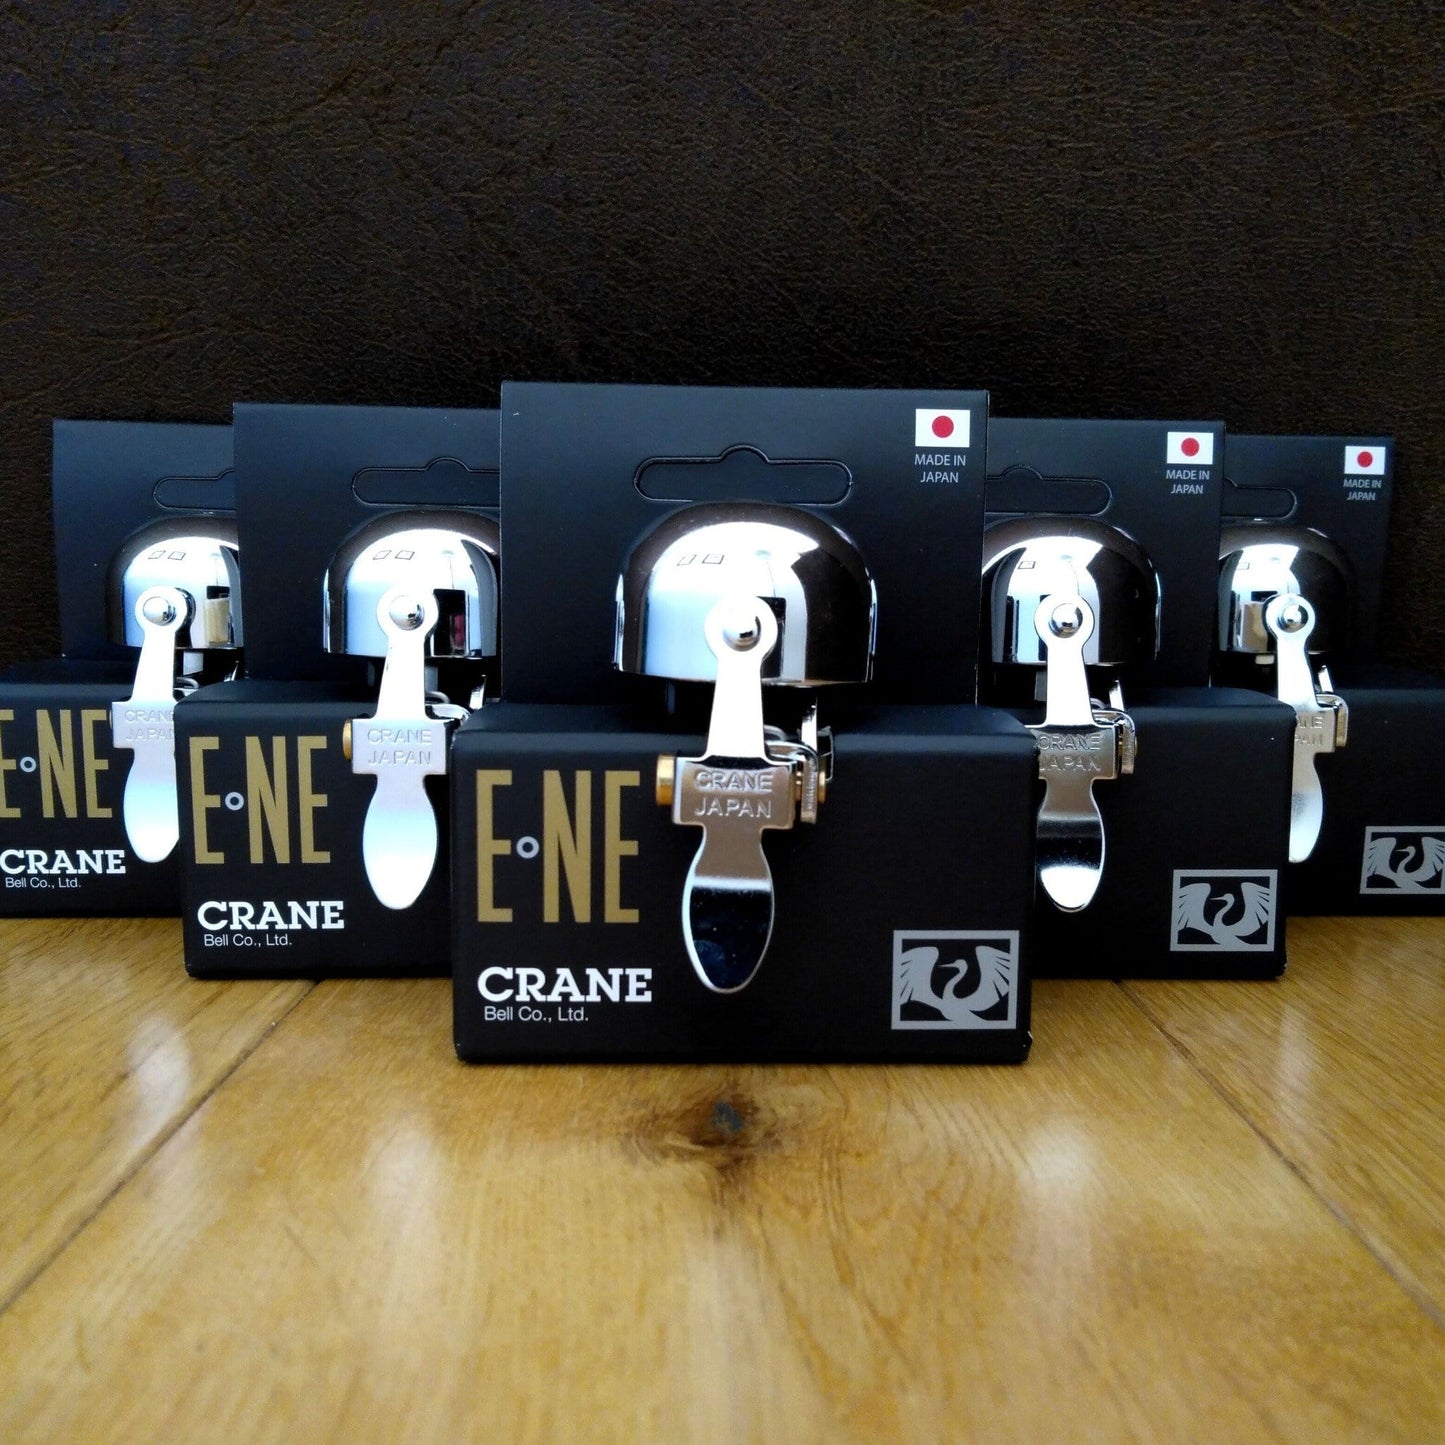 Crane All Chrome E-NE bike bells in packaging